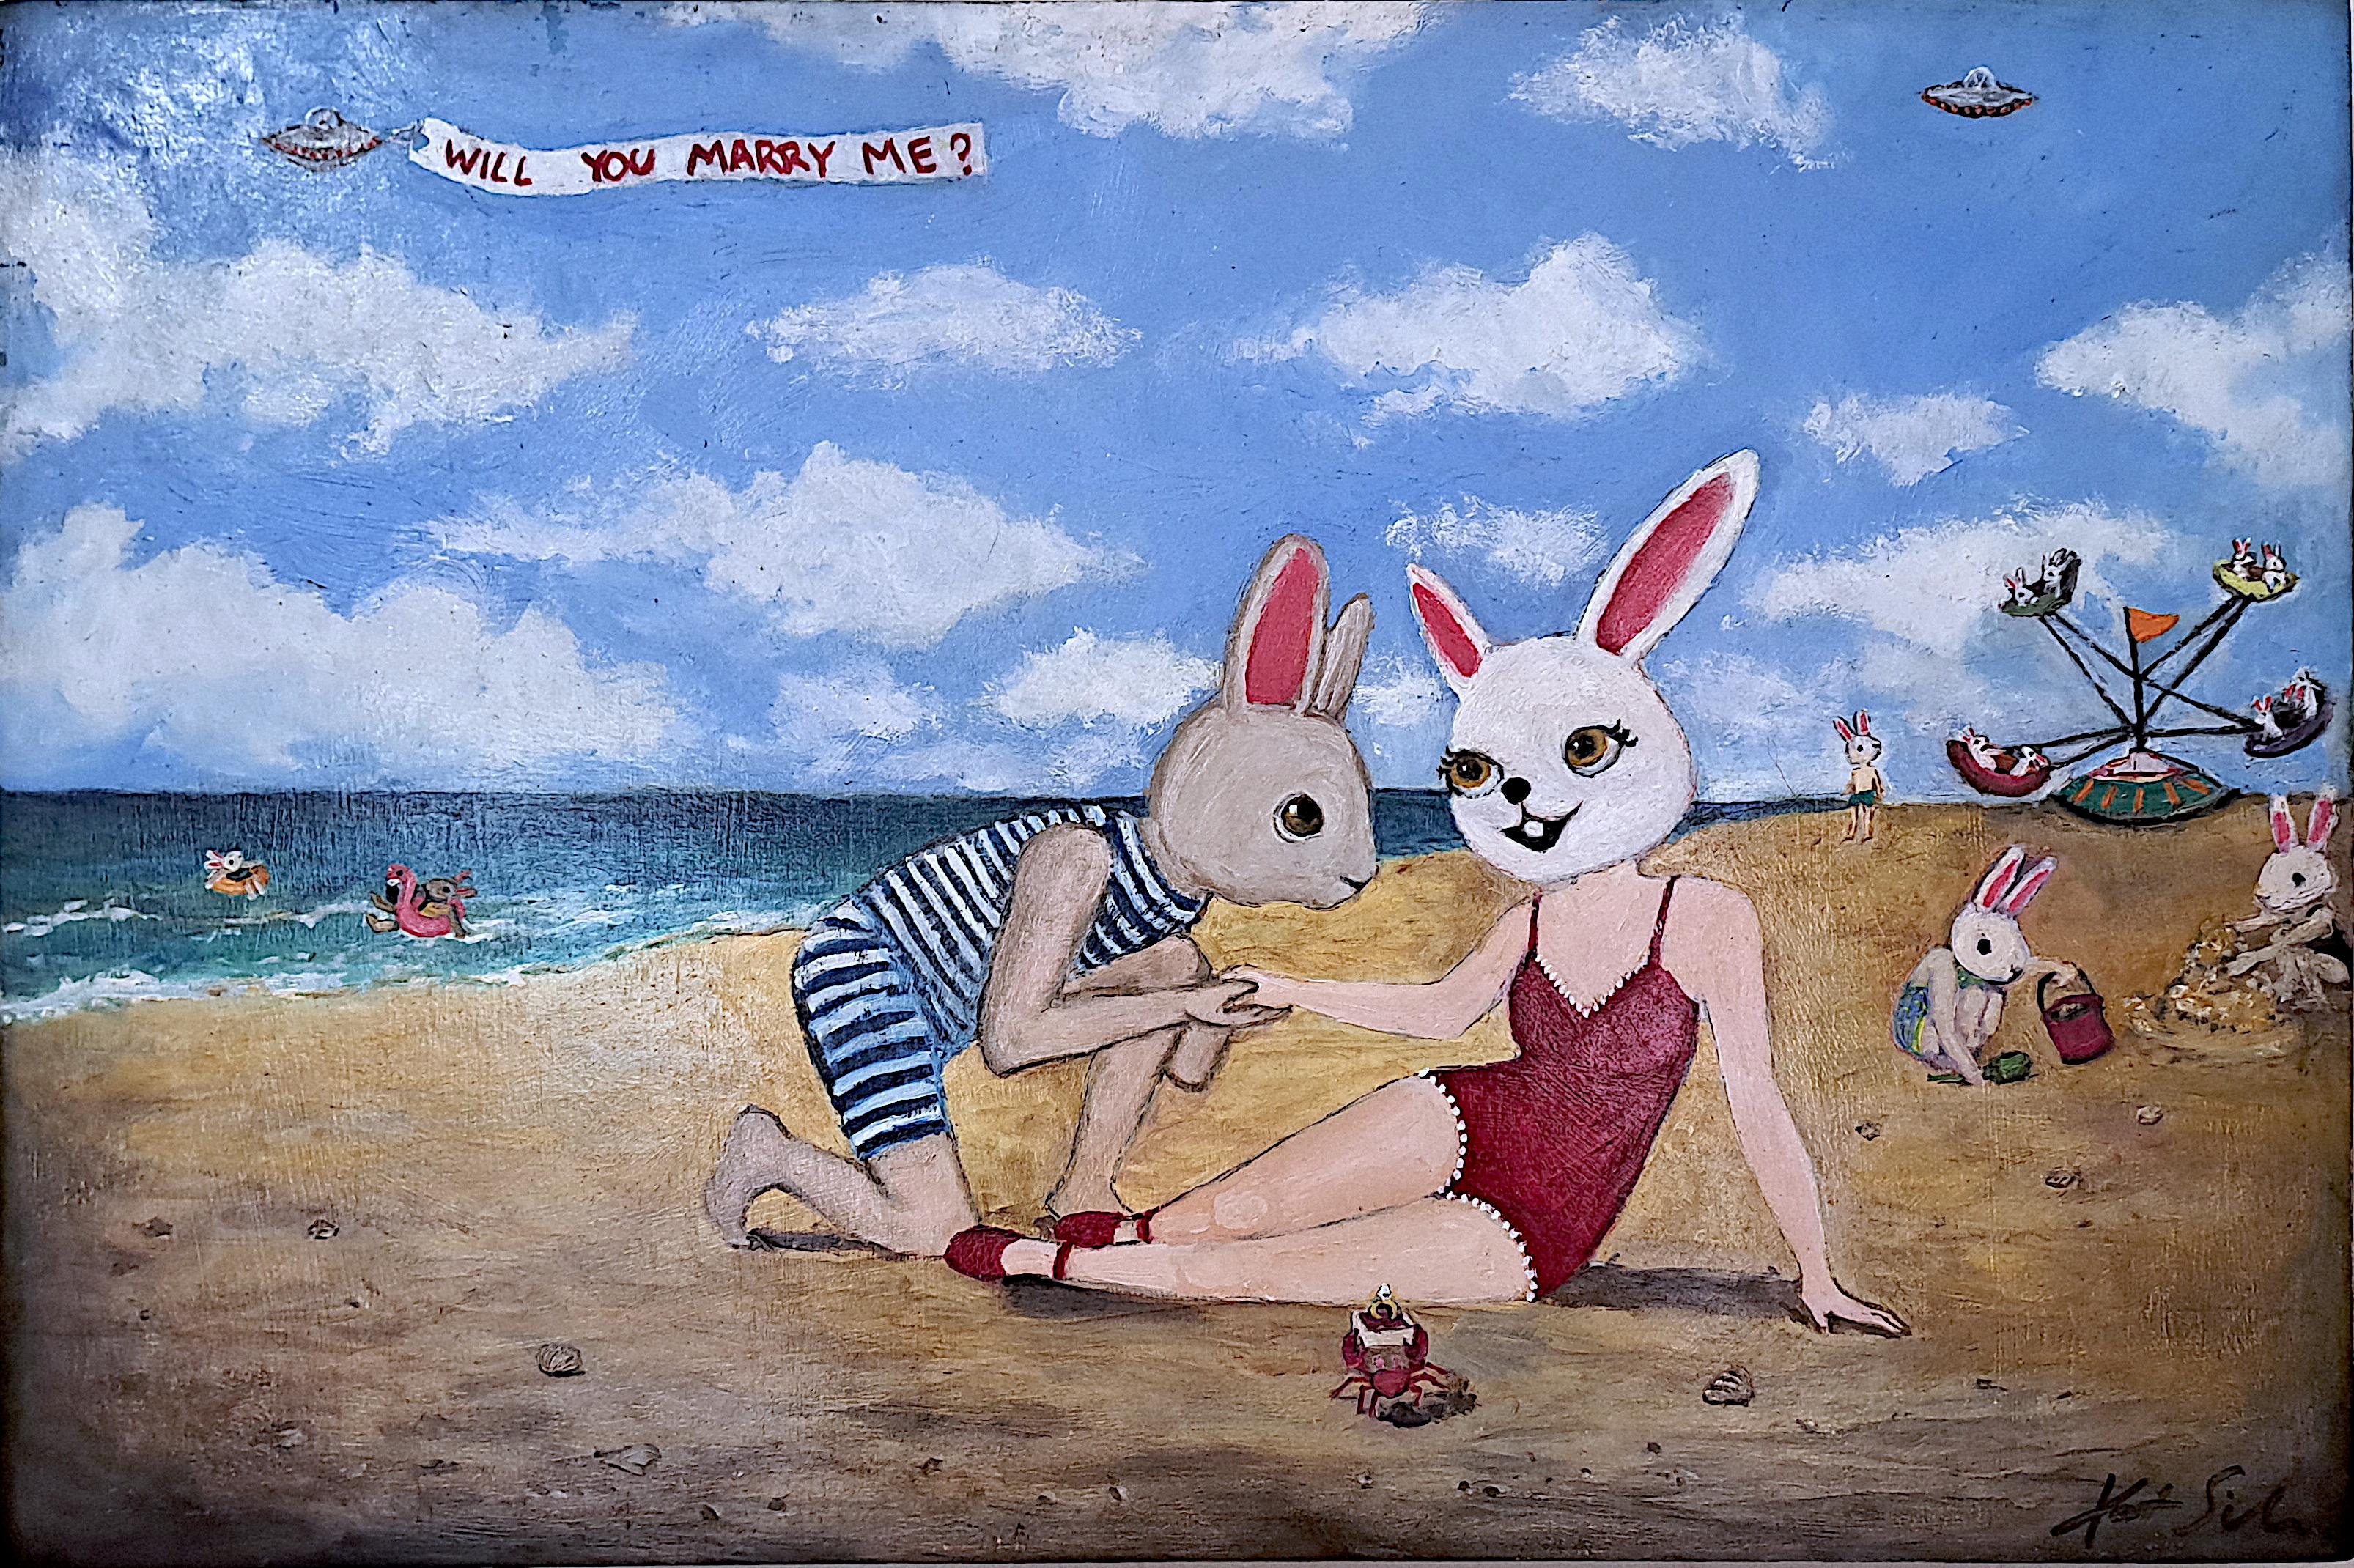 Proposition de plage, peinture à l'huile - Art de Kat Silver